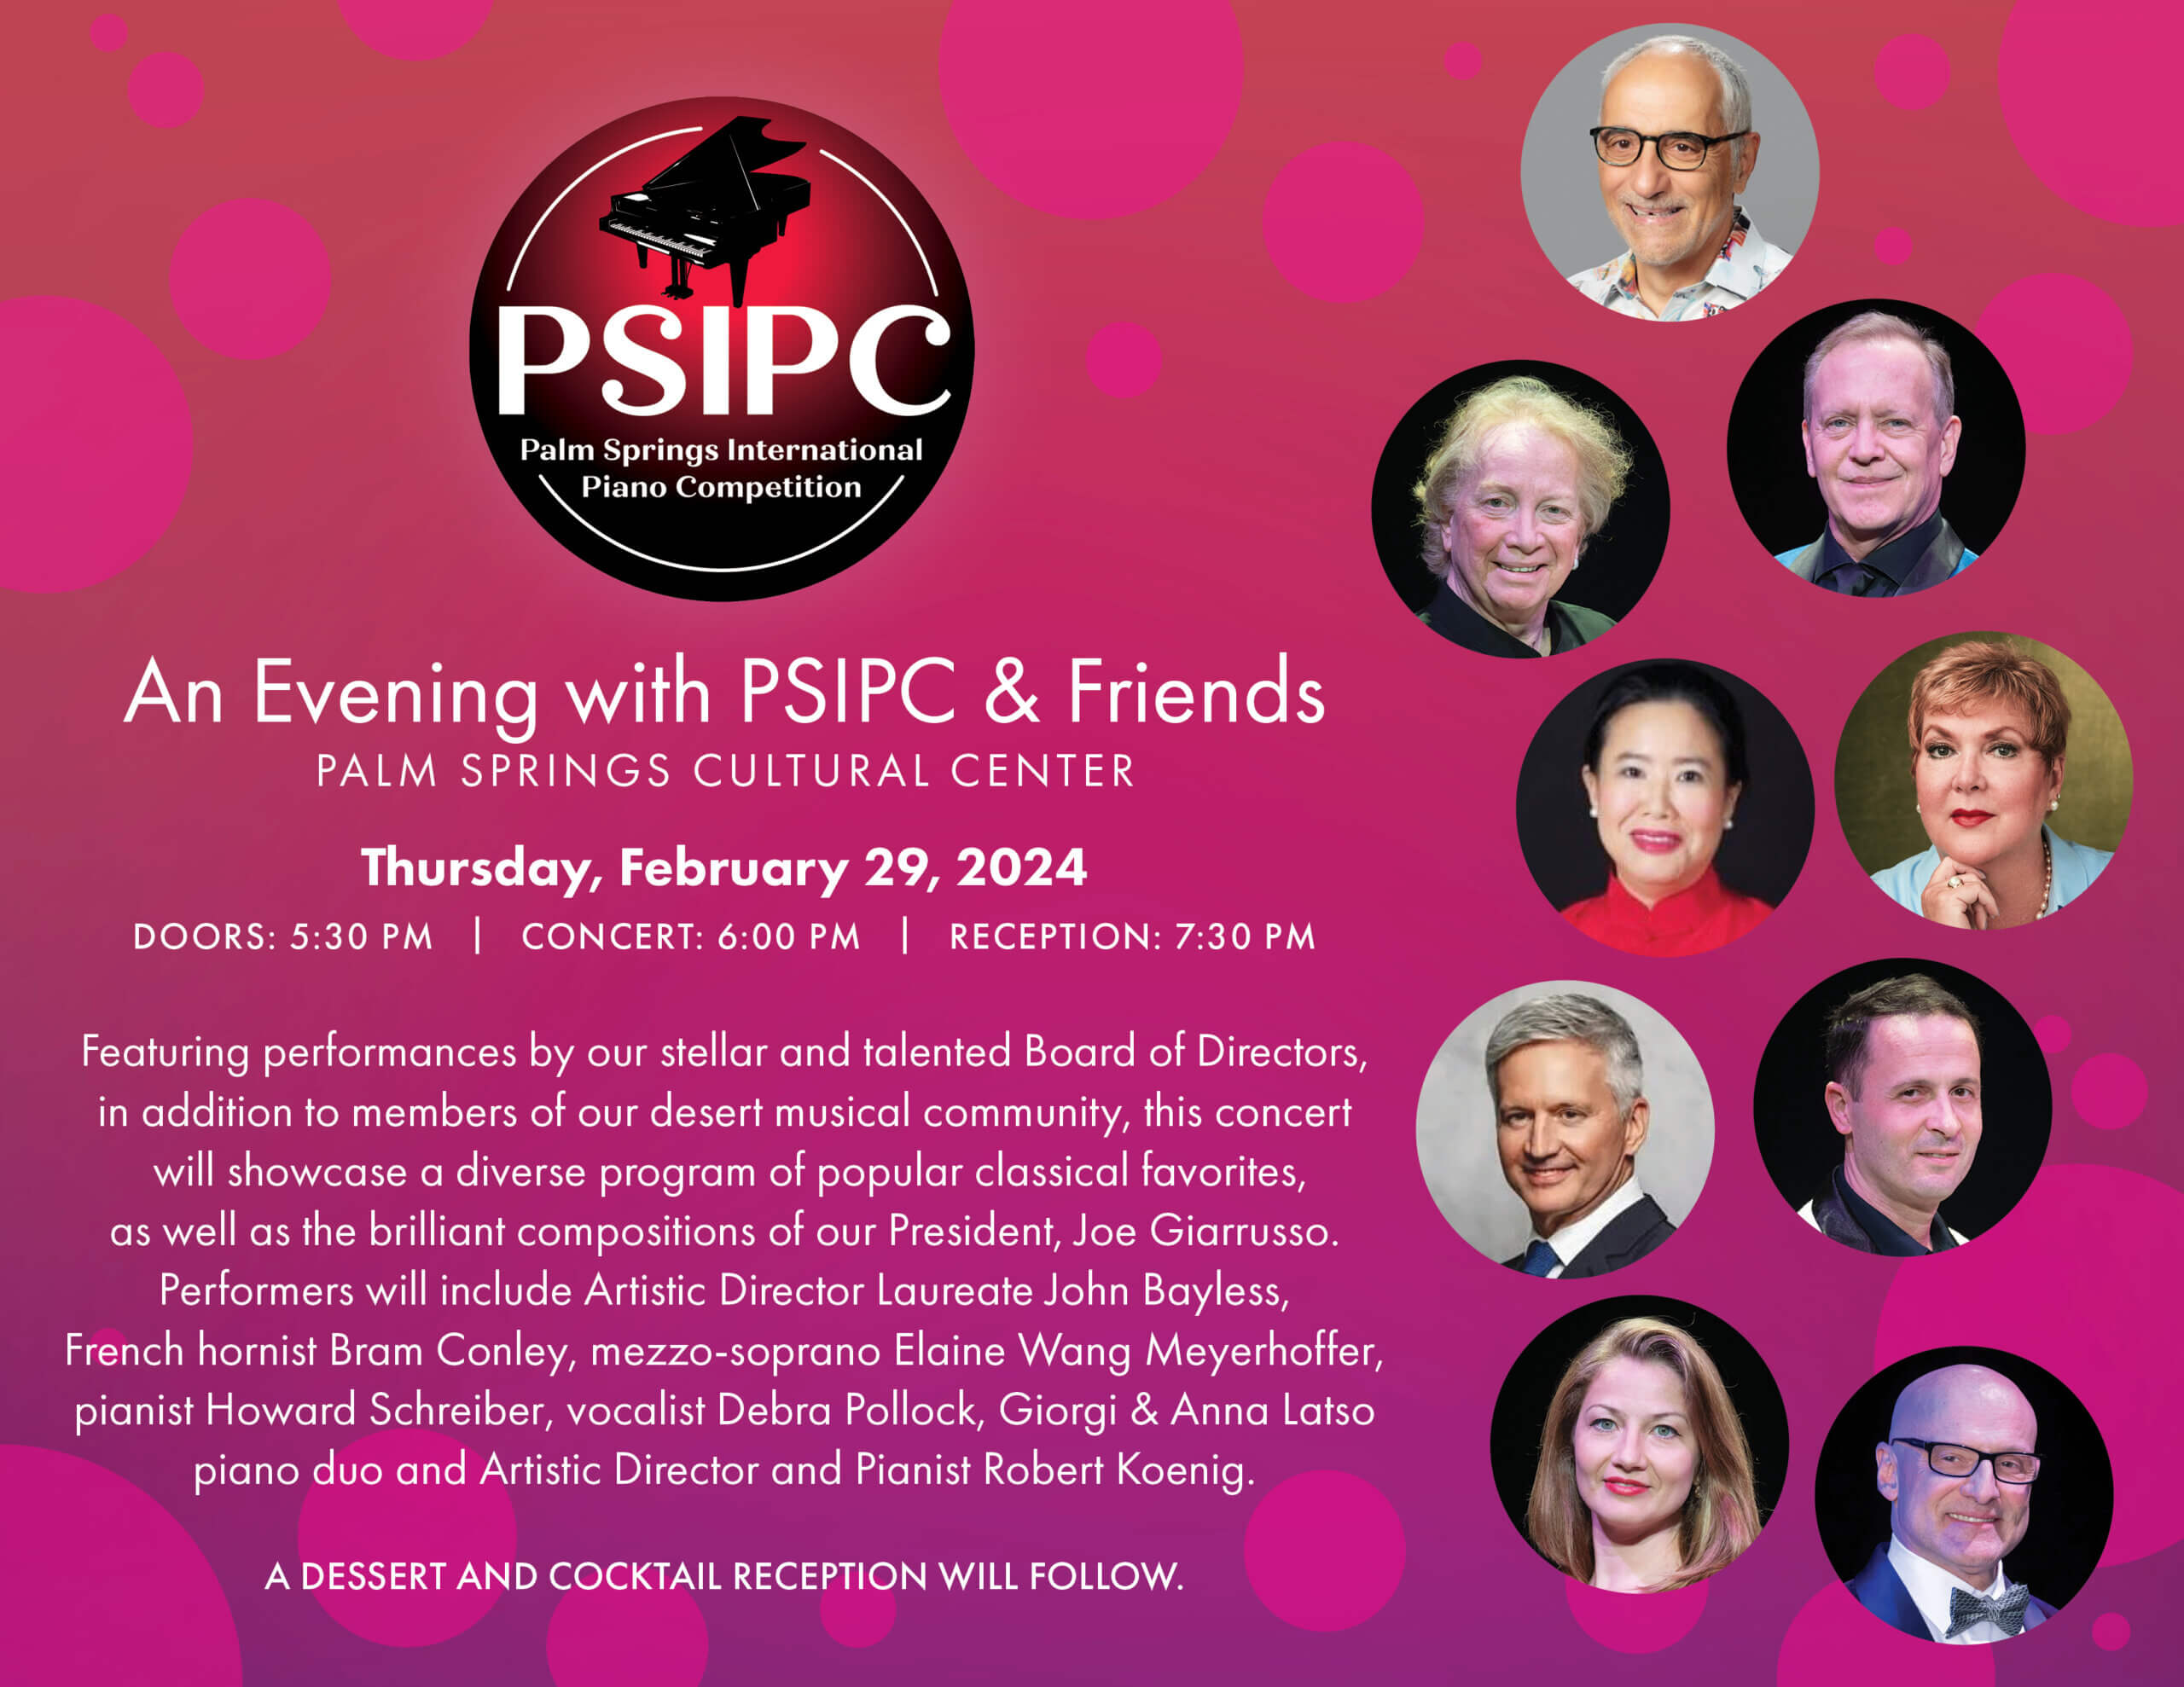 An Evening with PSIPC & Friends